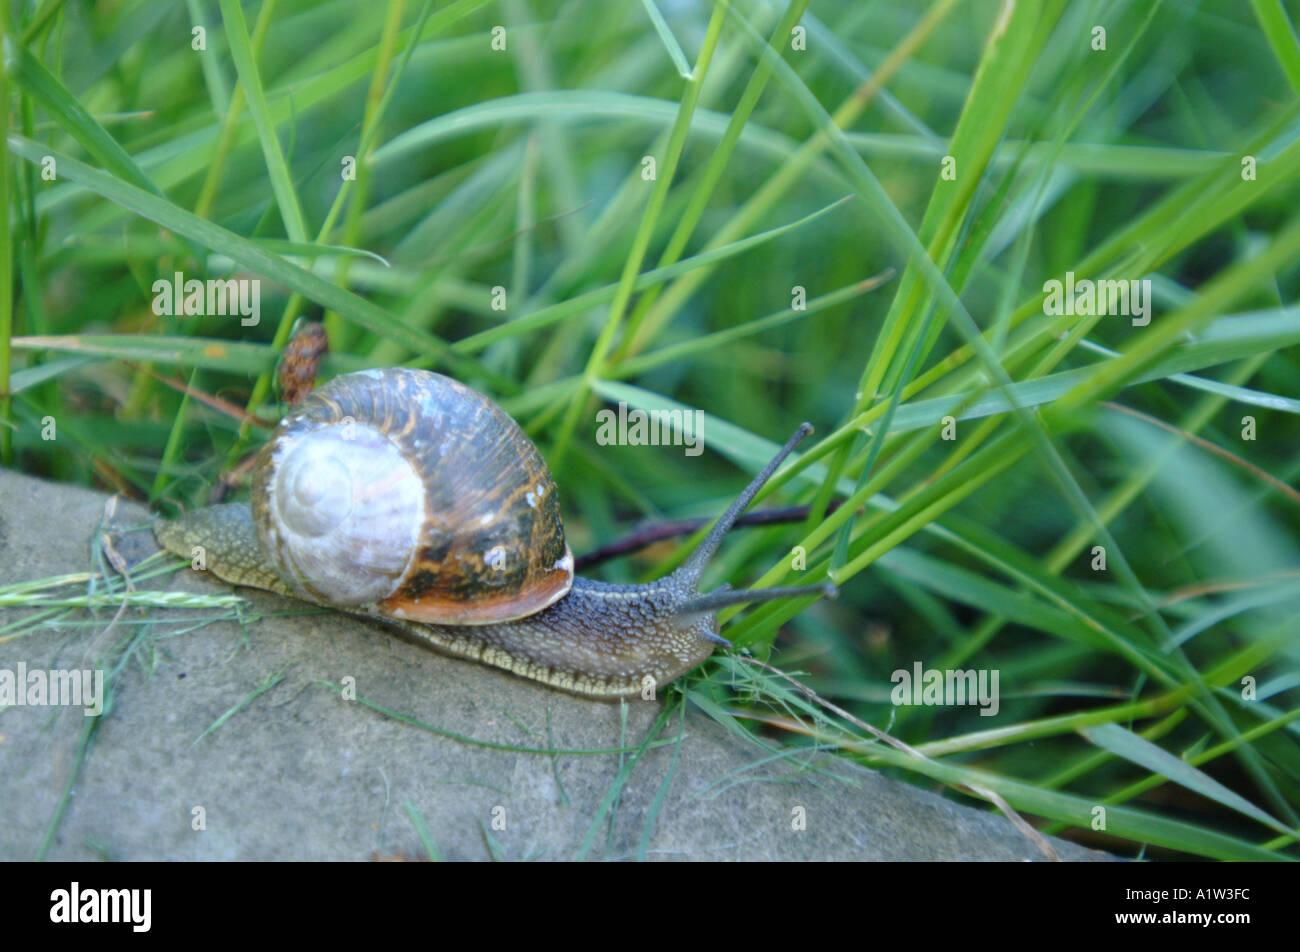 A garden snail crawling across a stone Stock Photo